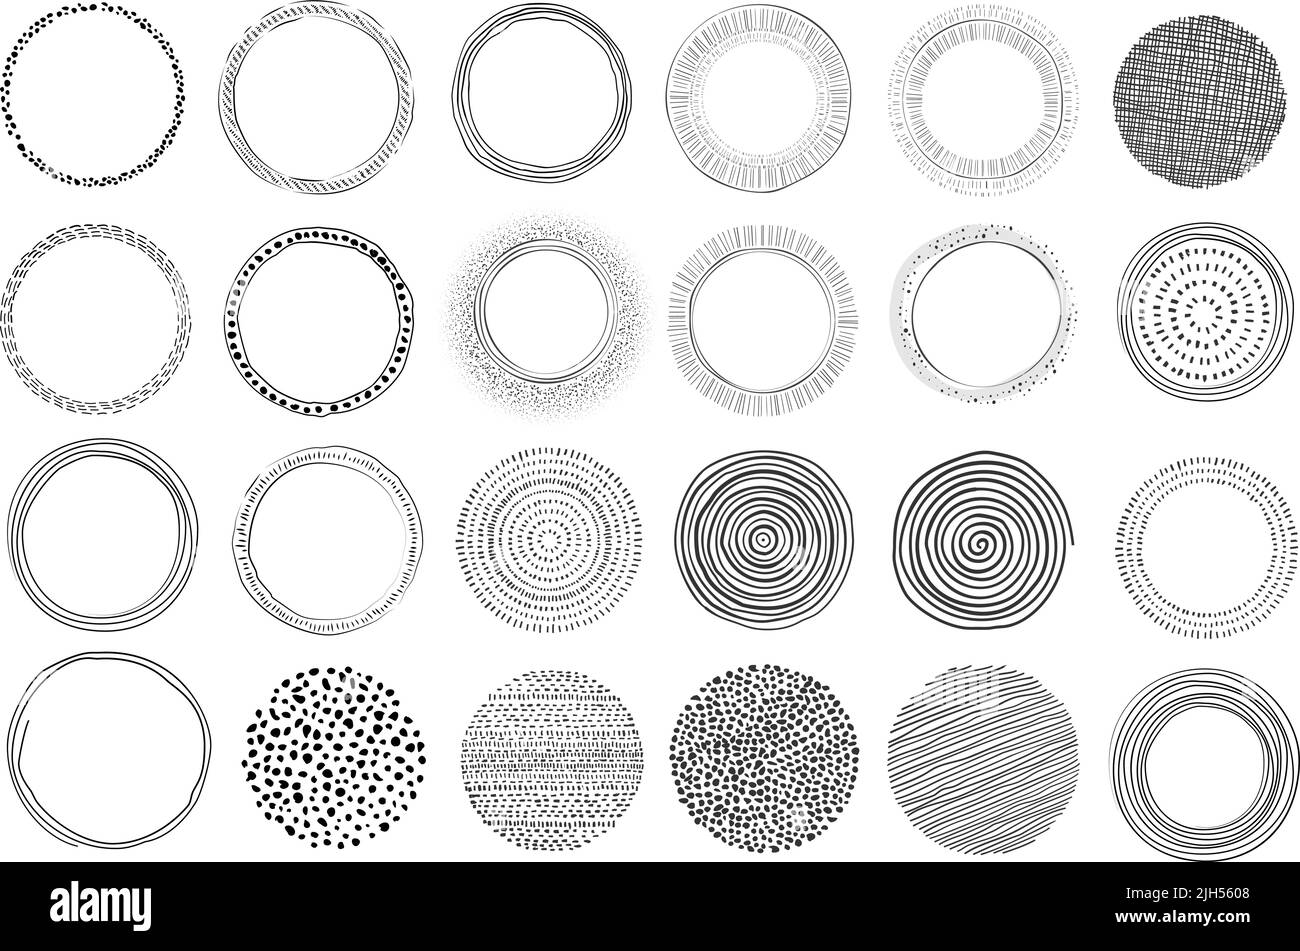 Große Sammlung von handgezeichneten kreisförmigen grafischen Design-Elementen, moderne Formen isoliert auf weiß, Vektor-Illustration Stock Vektor